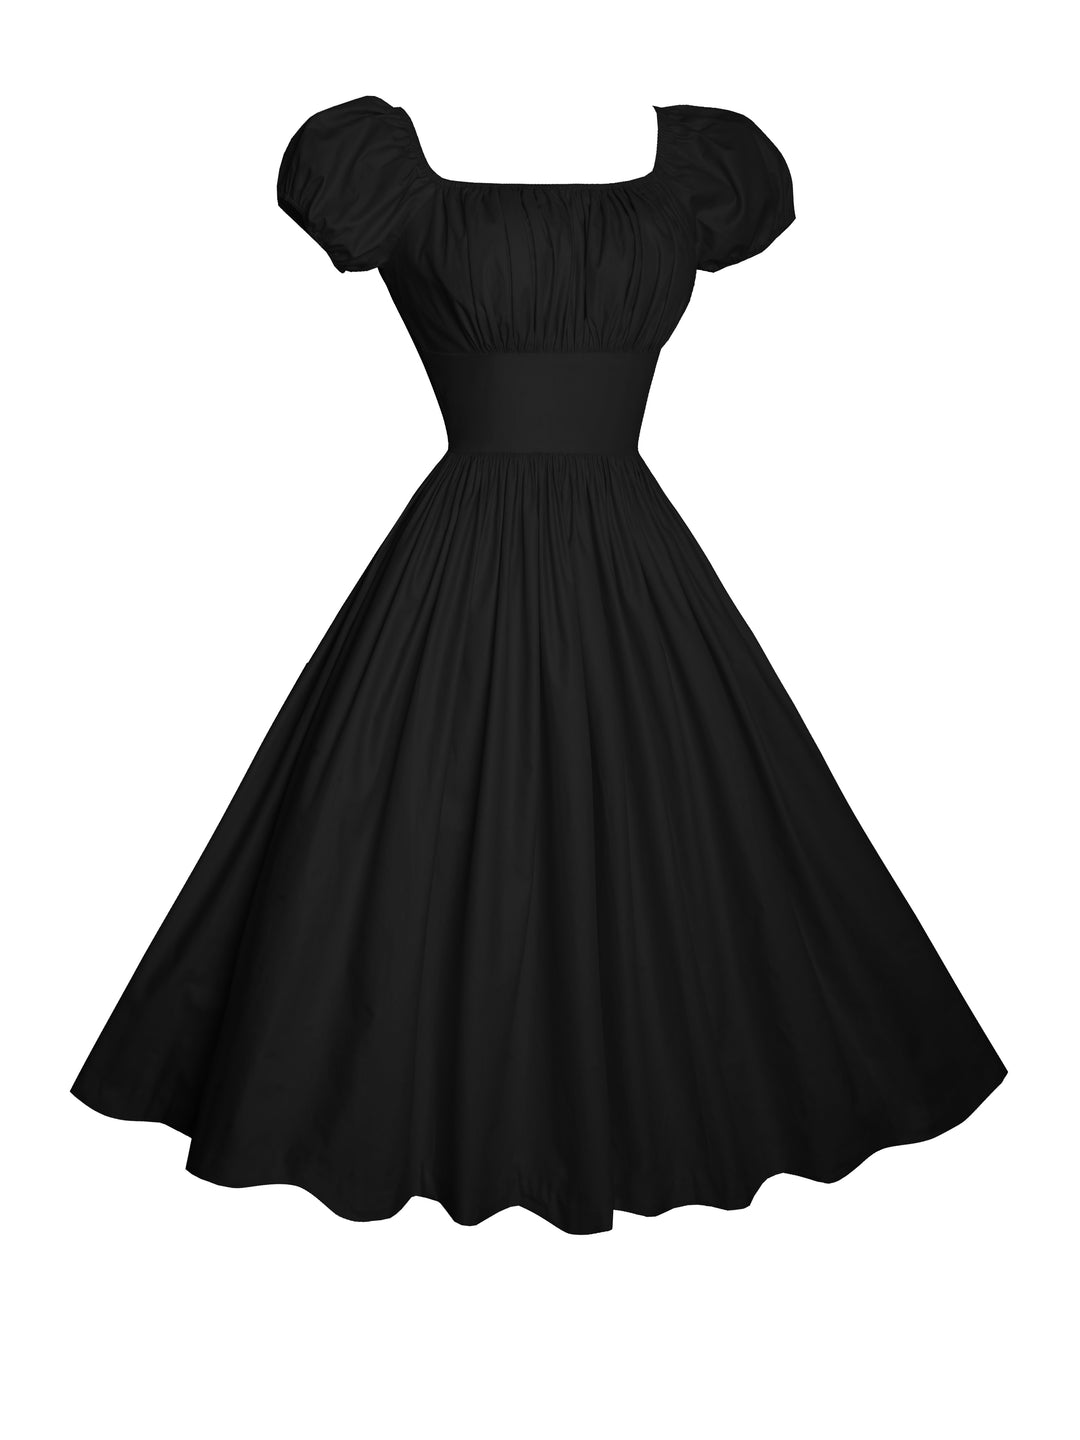 MTO - Loretta Dress in Raven Black Cotton